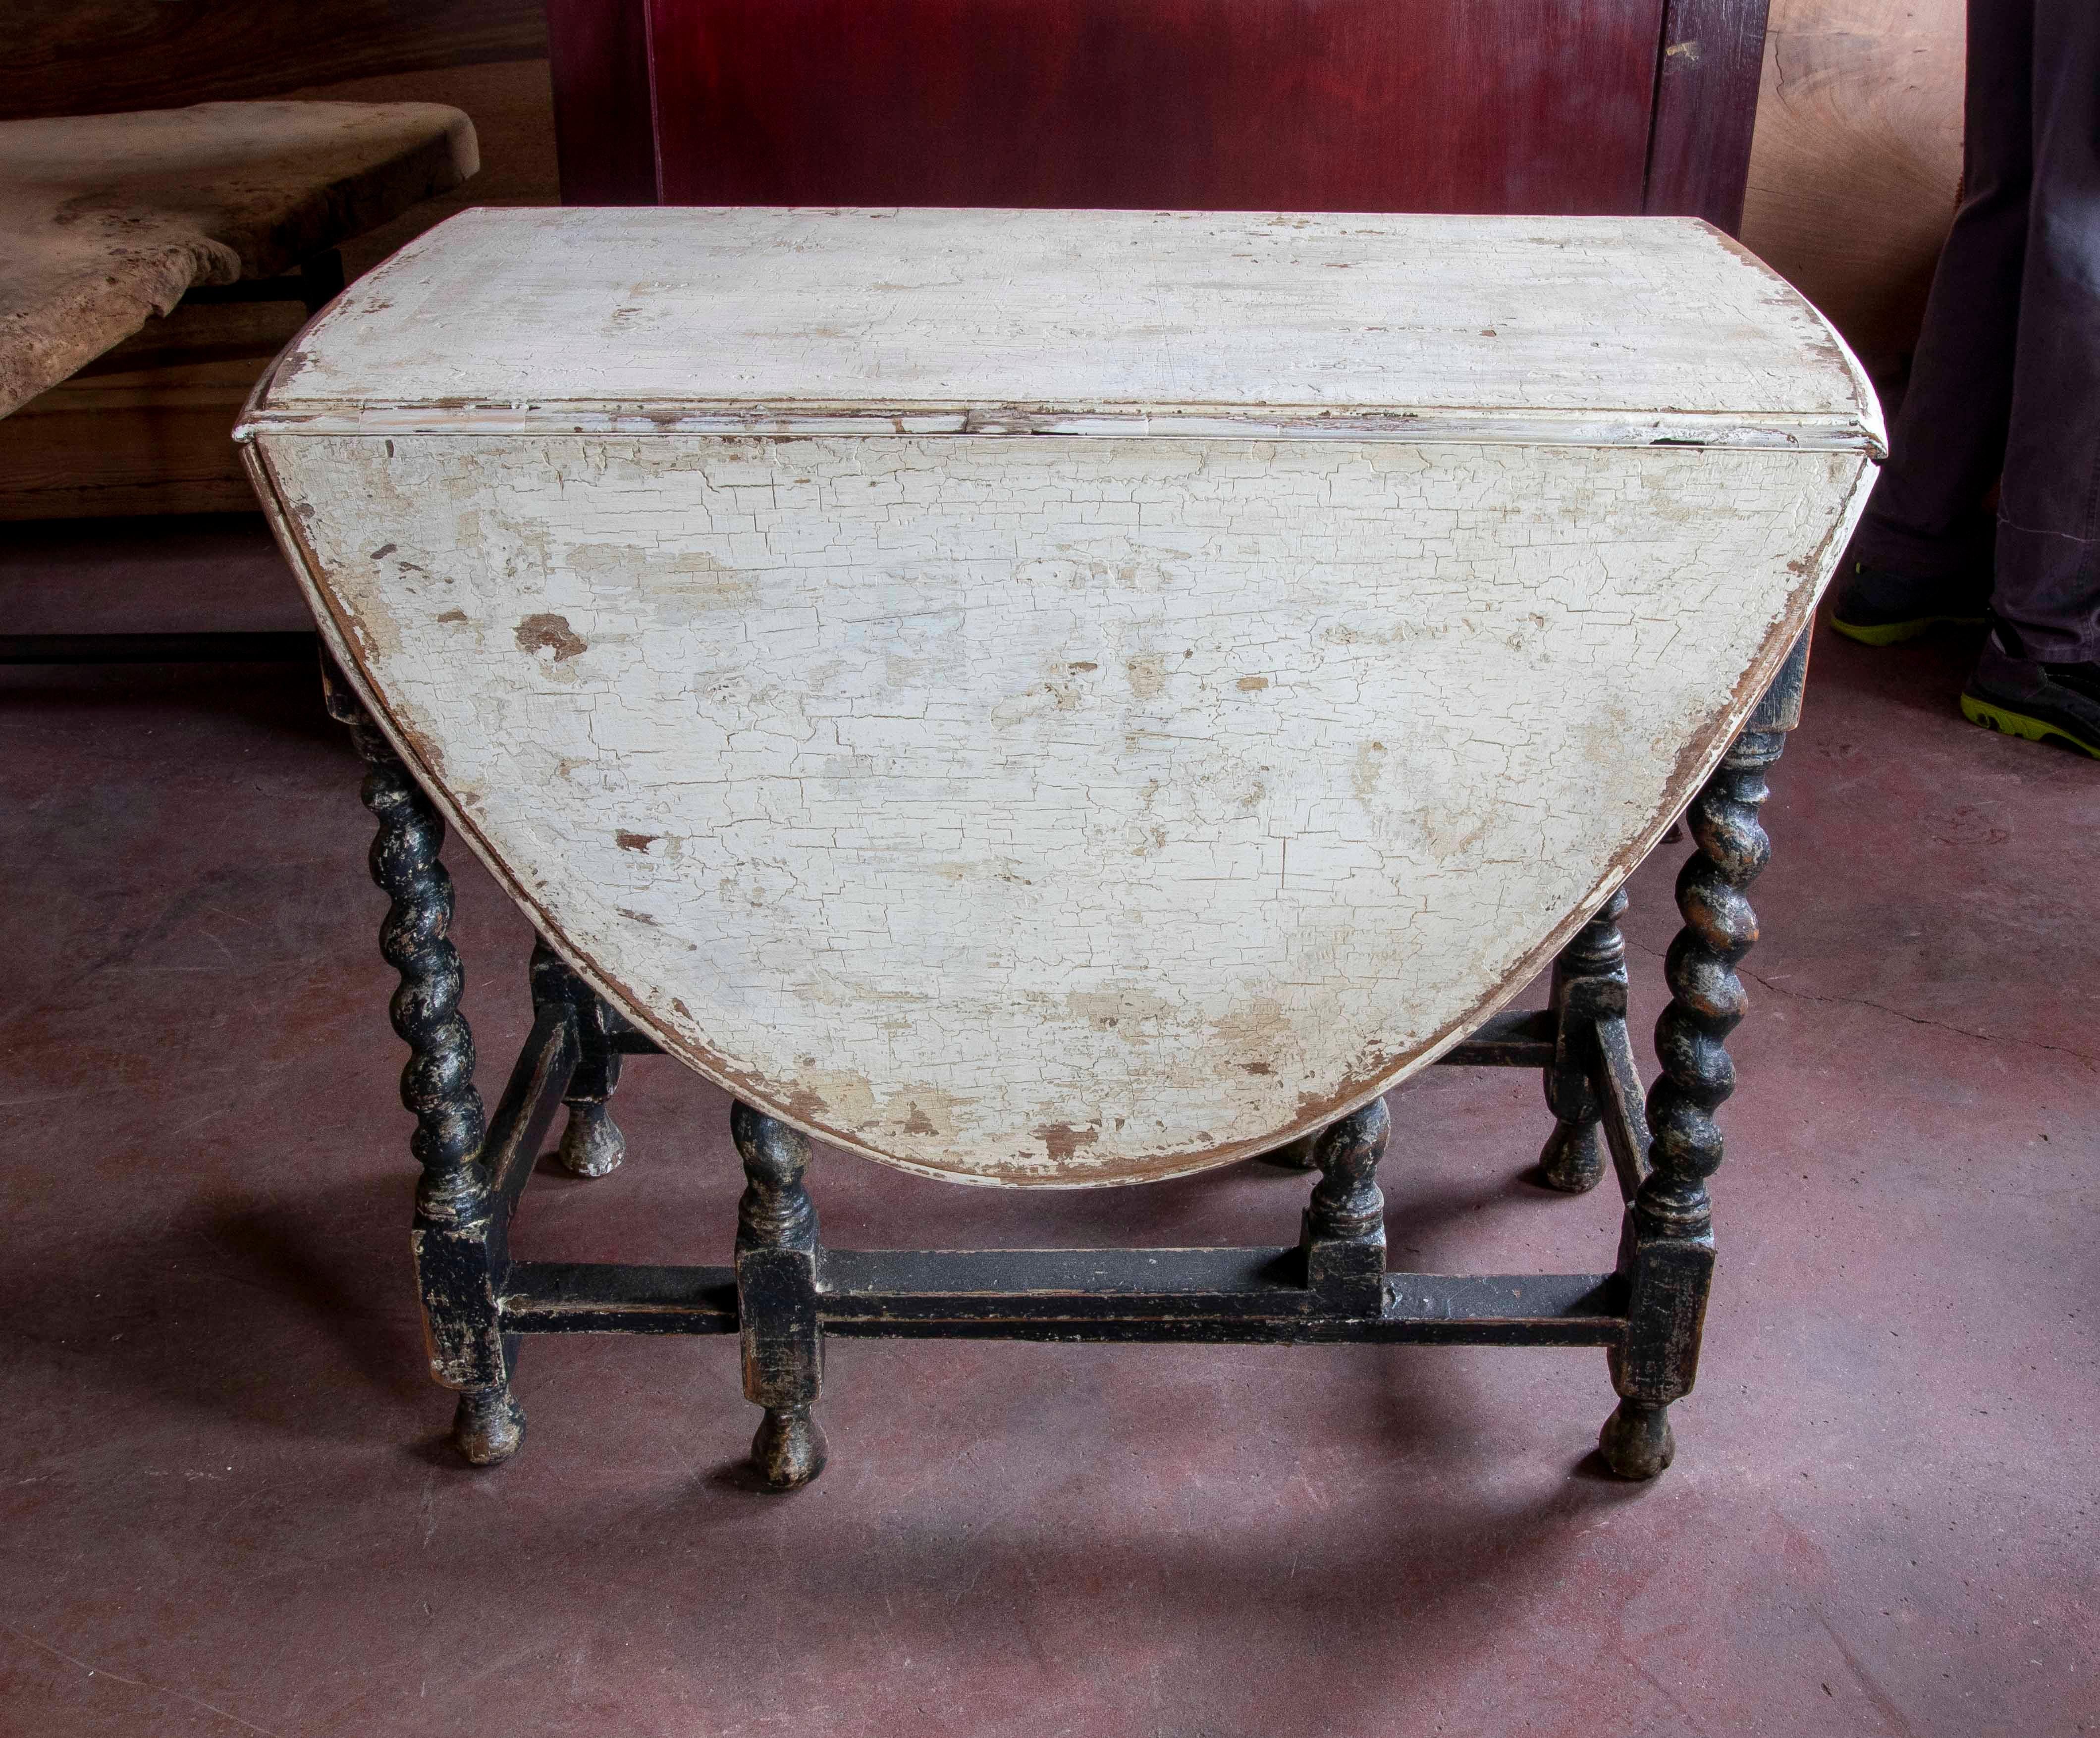 Spanischer Flügeltisch mit polychromierten, gedrechselten Beinen
Abmessungen des offenen Tisches: 133cm